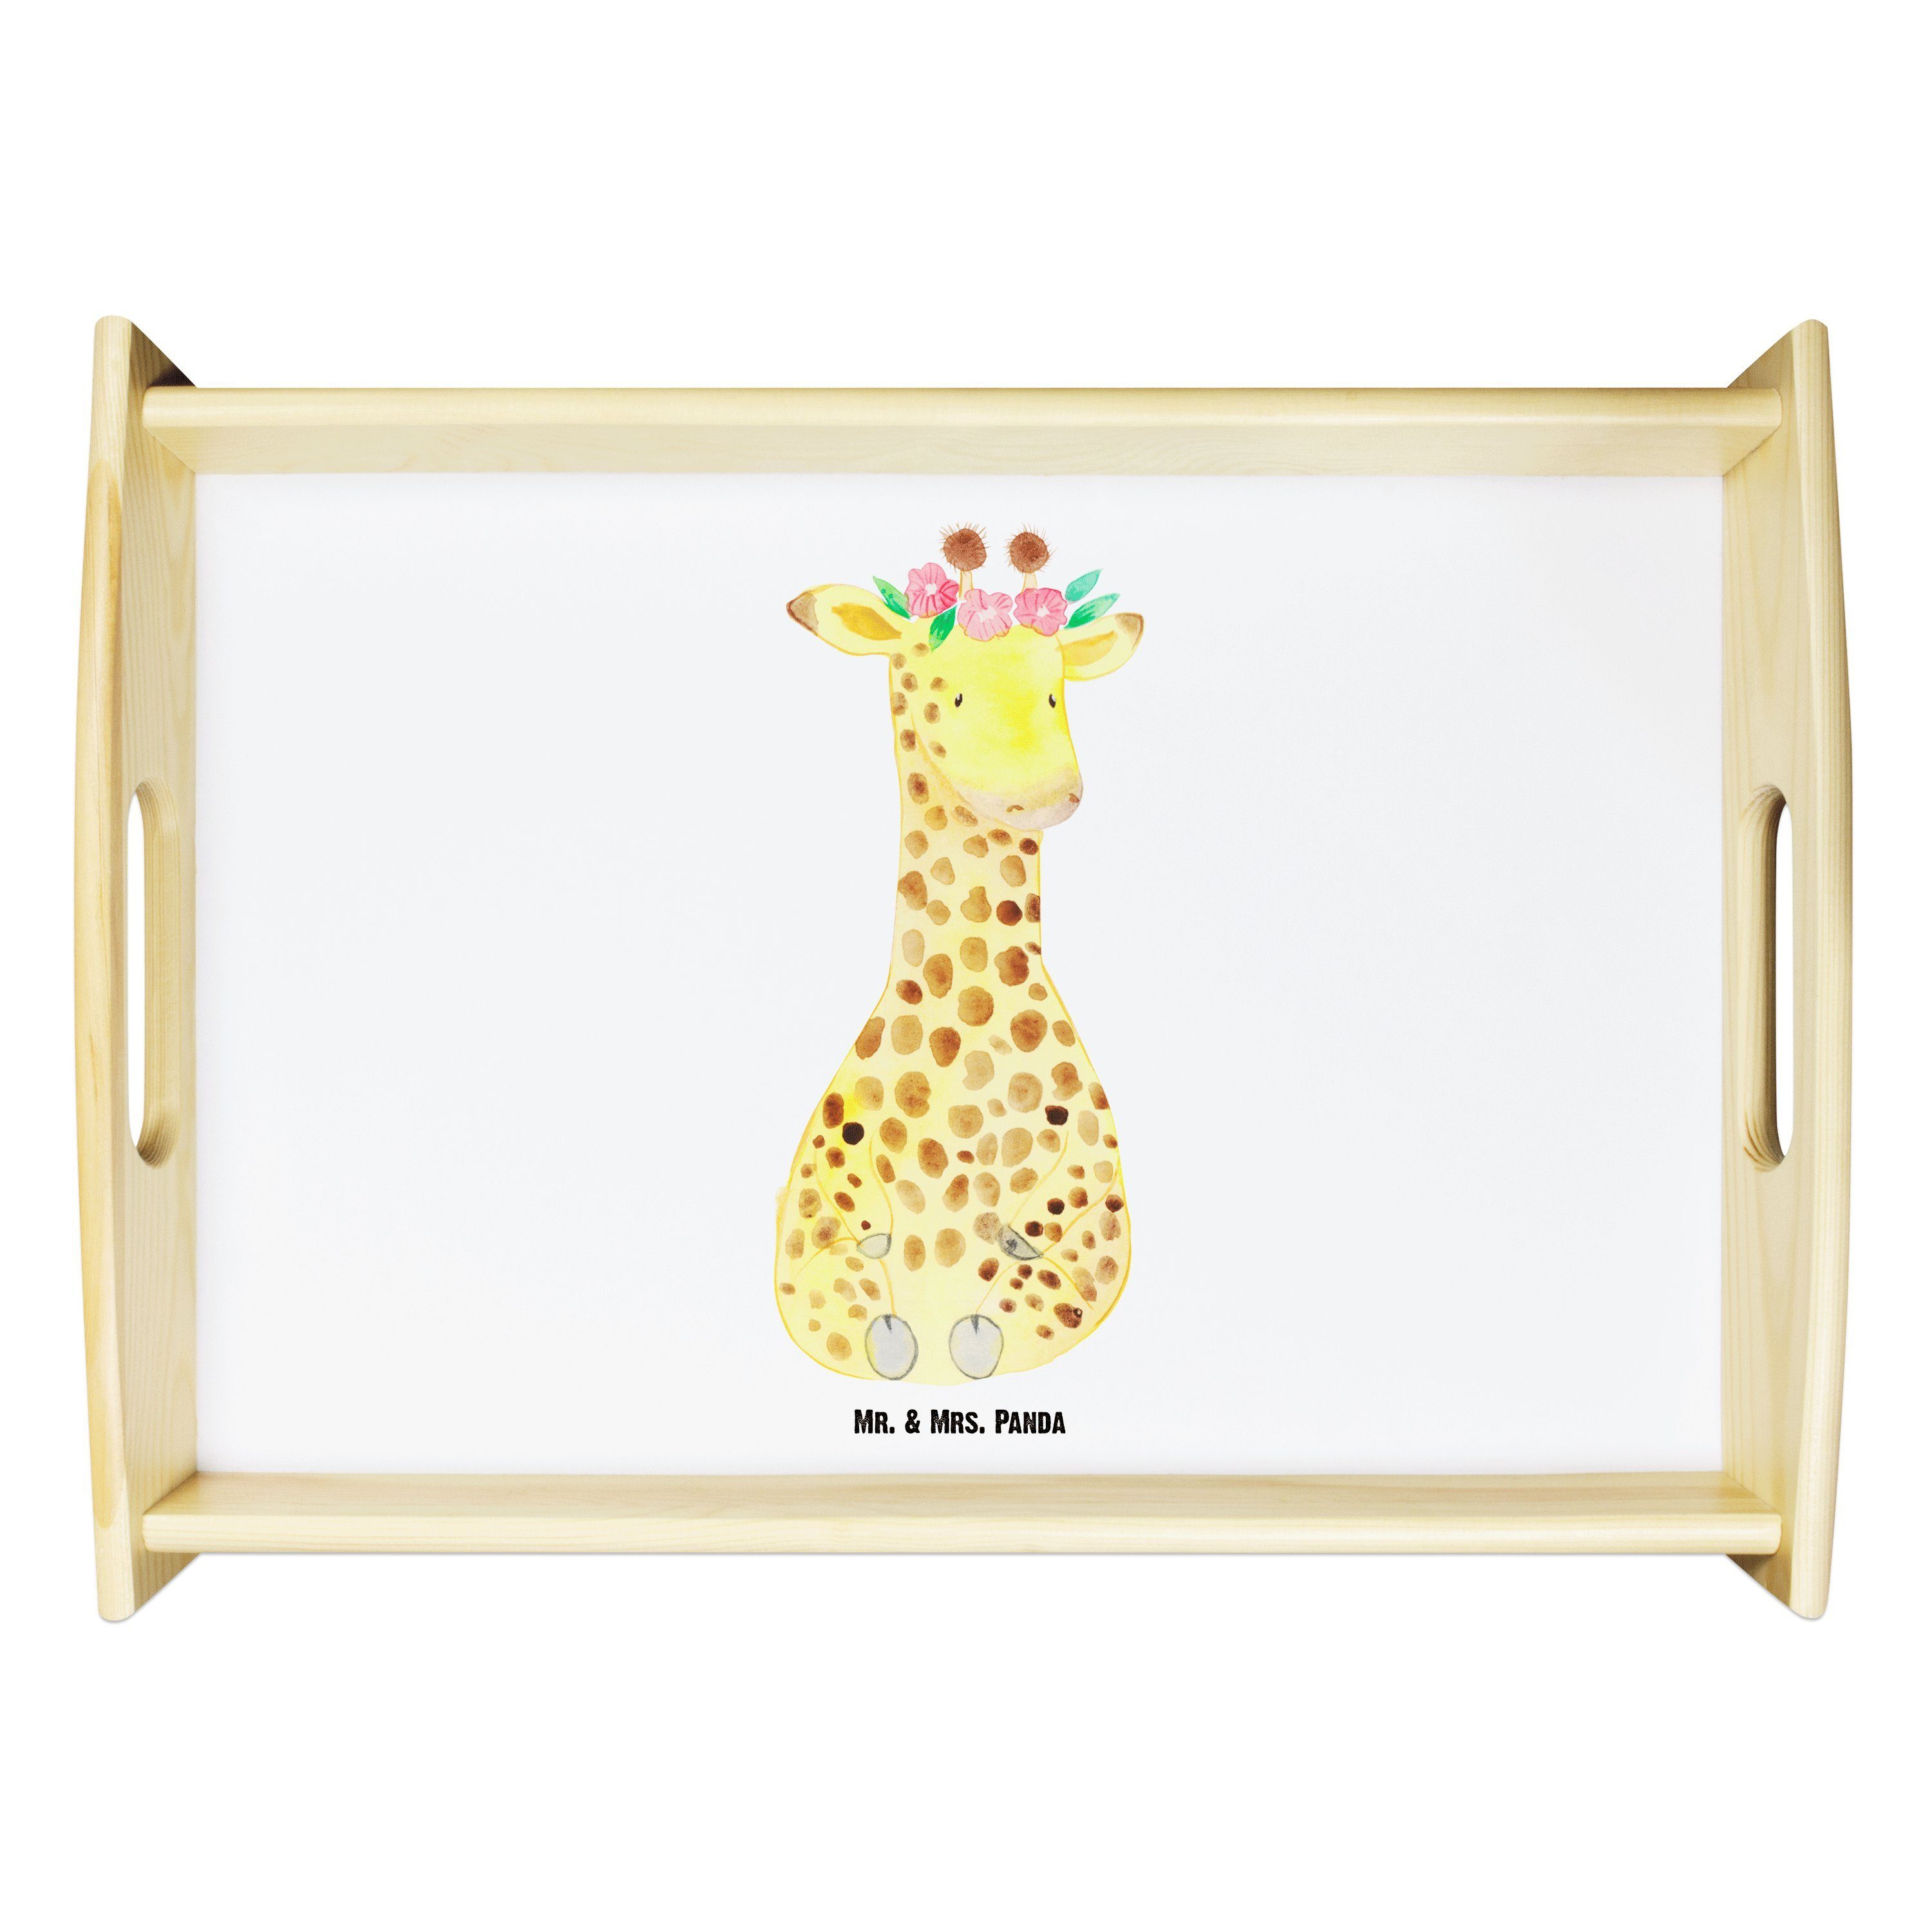 Mr. & Mrs. Panda Tablett Giraffe Blumenkranz - Weiß - Geschenk, Wildtiere, Afrika, Frühstückst, Echtholz lasiert, (1-tlg)